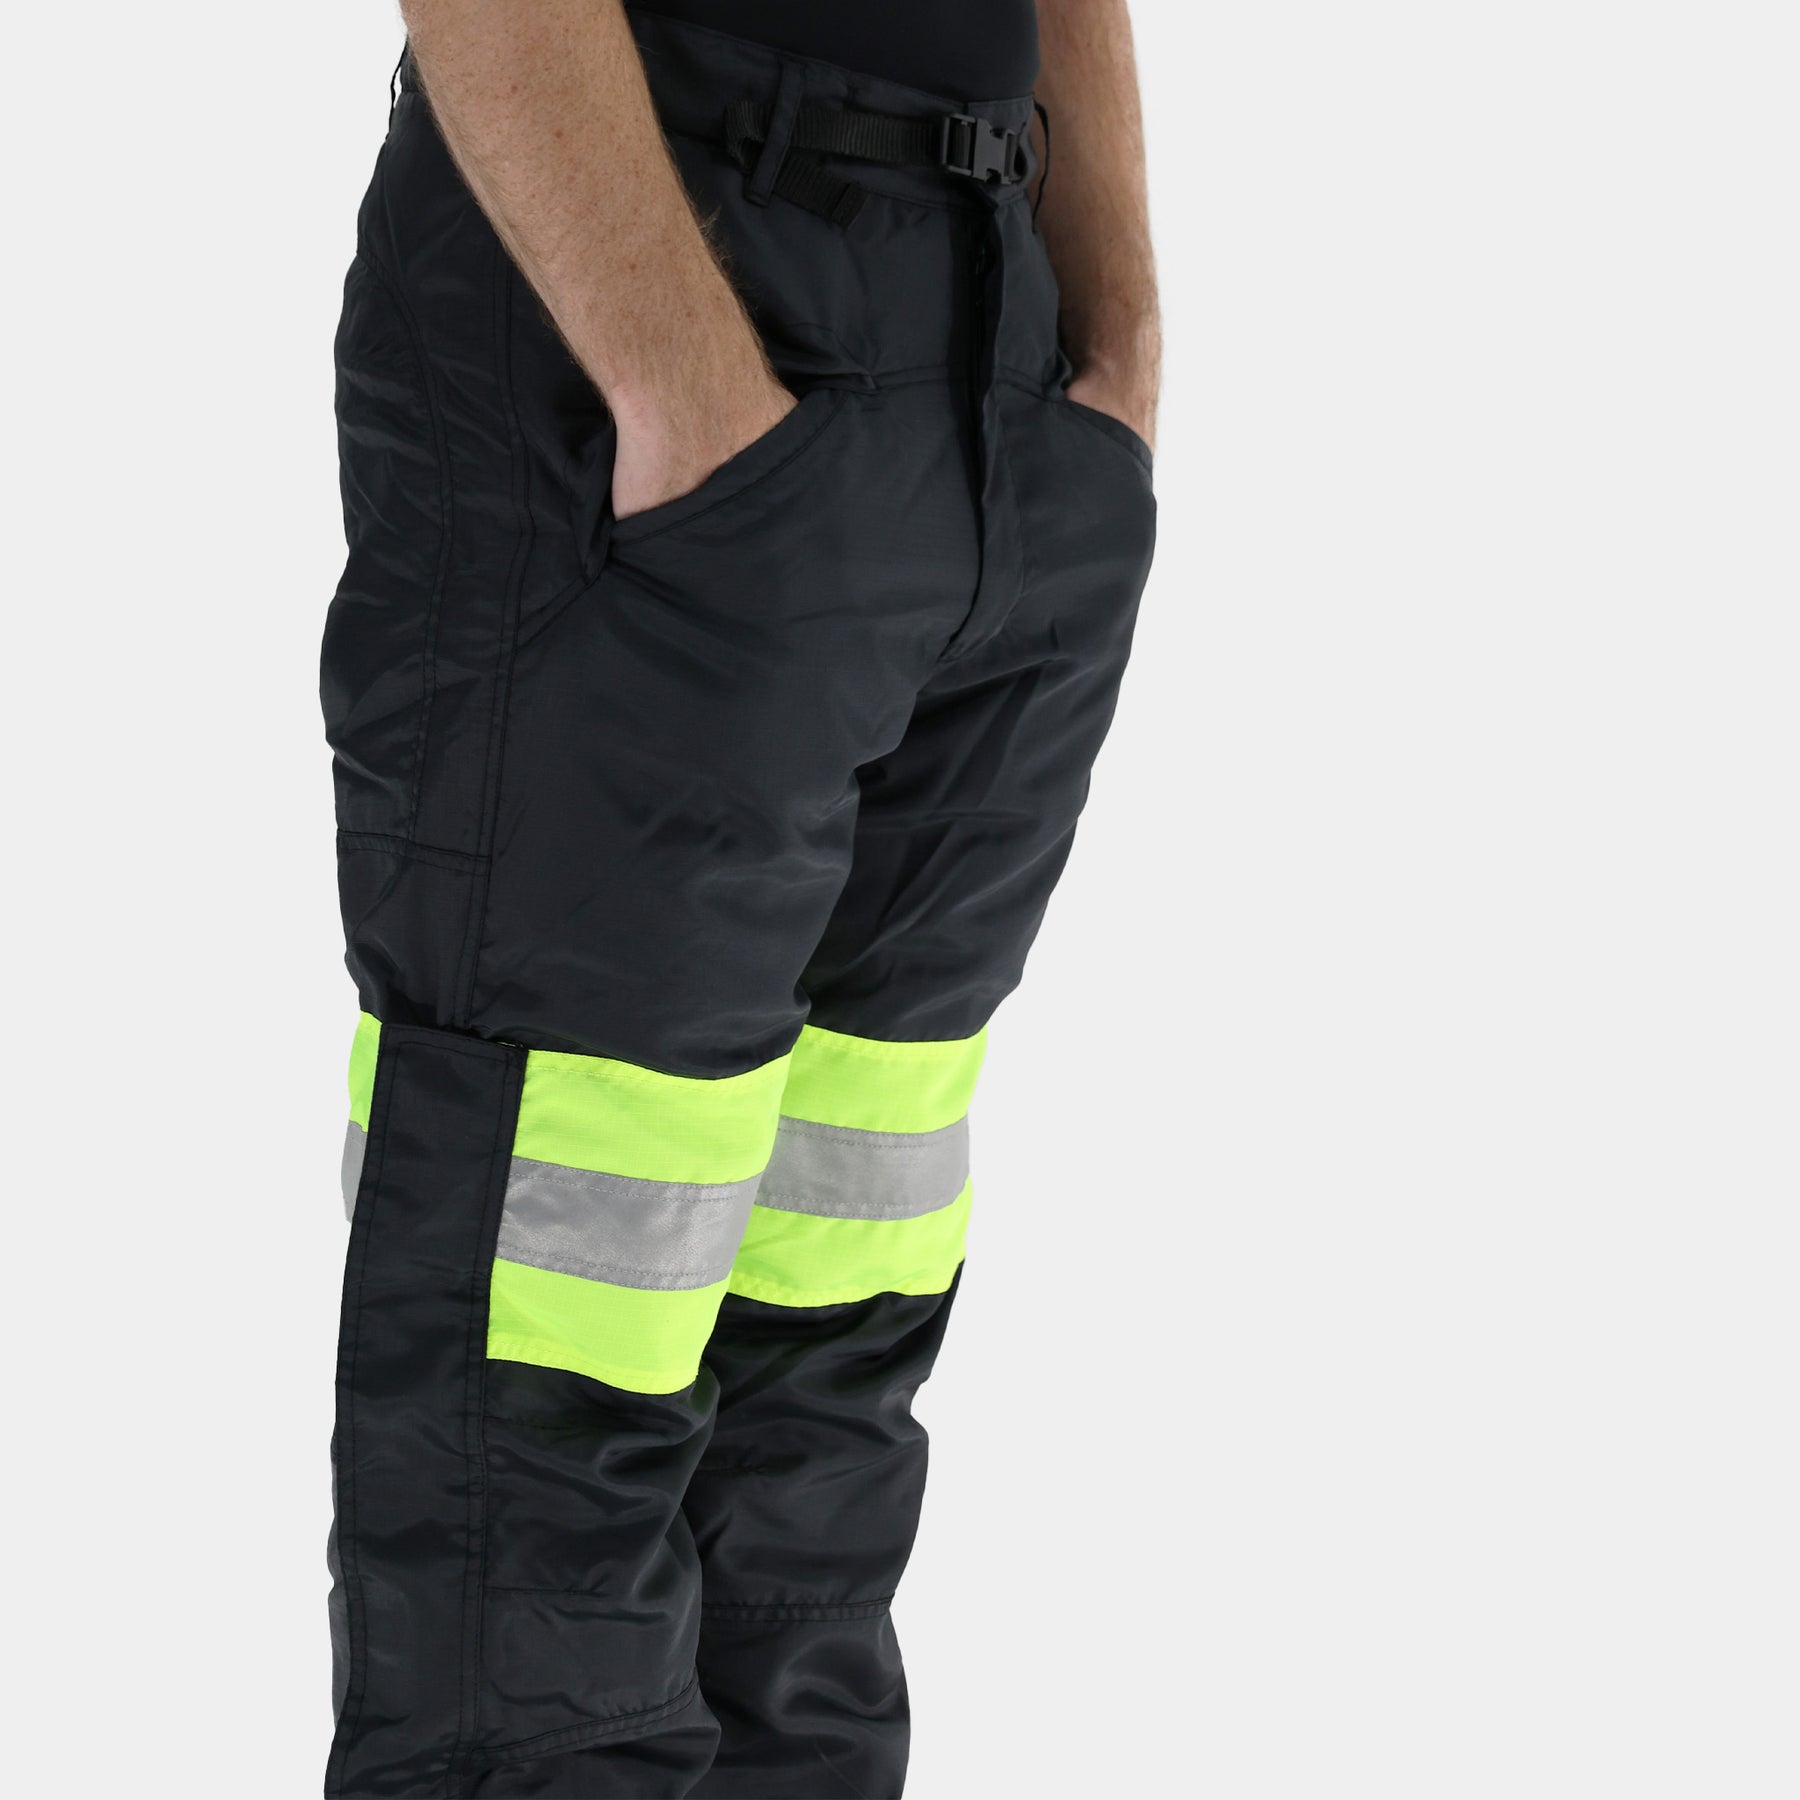 proteccion-corporal-ropa-de-trabajo-industrial-pantalones-Pantalon